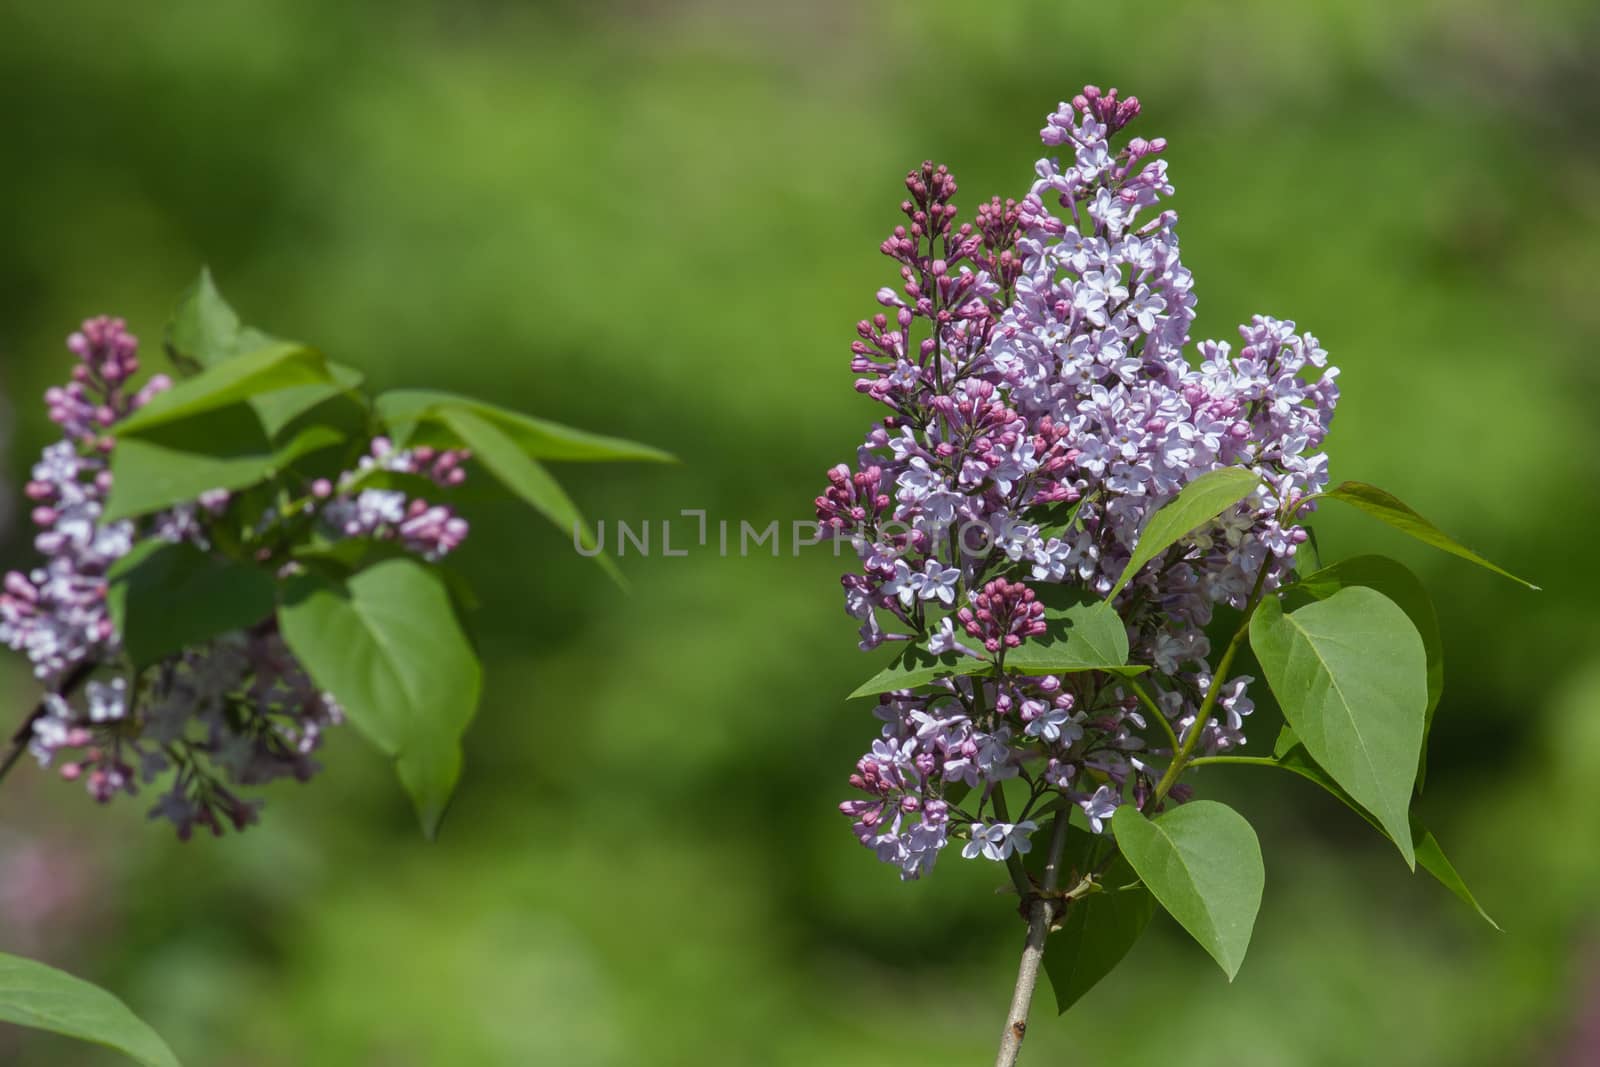 Lilacs by Ohotnik